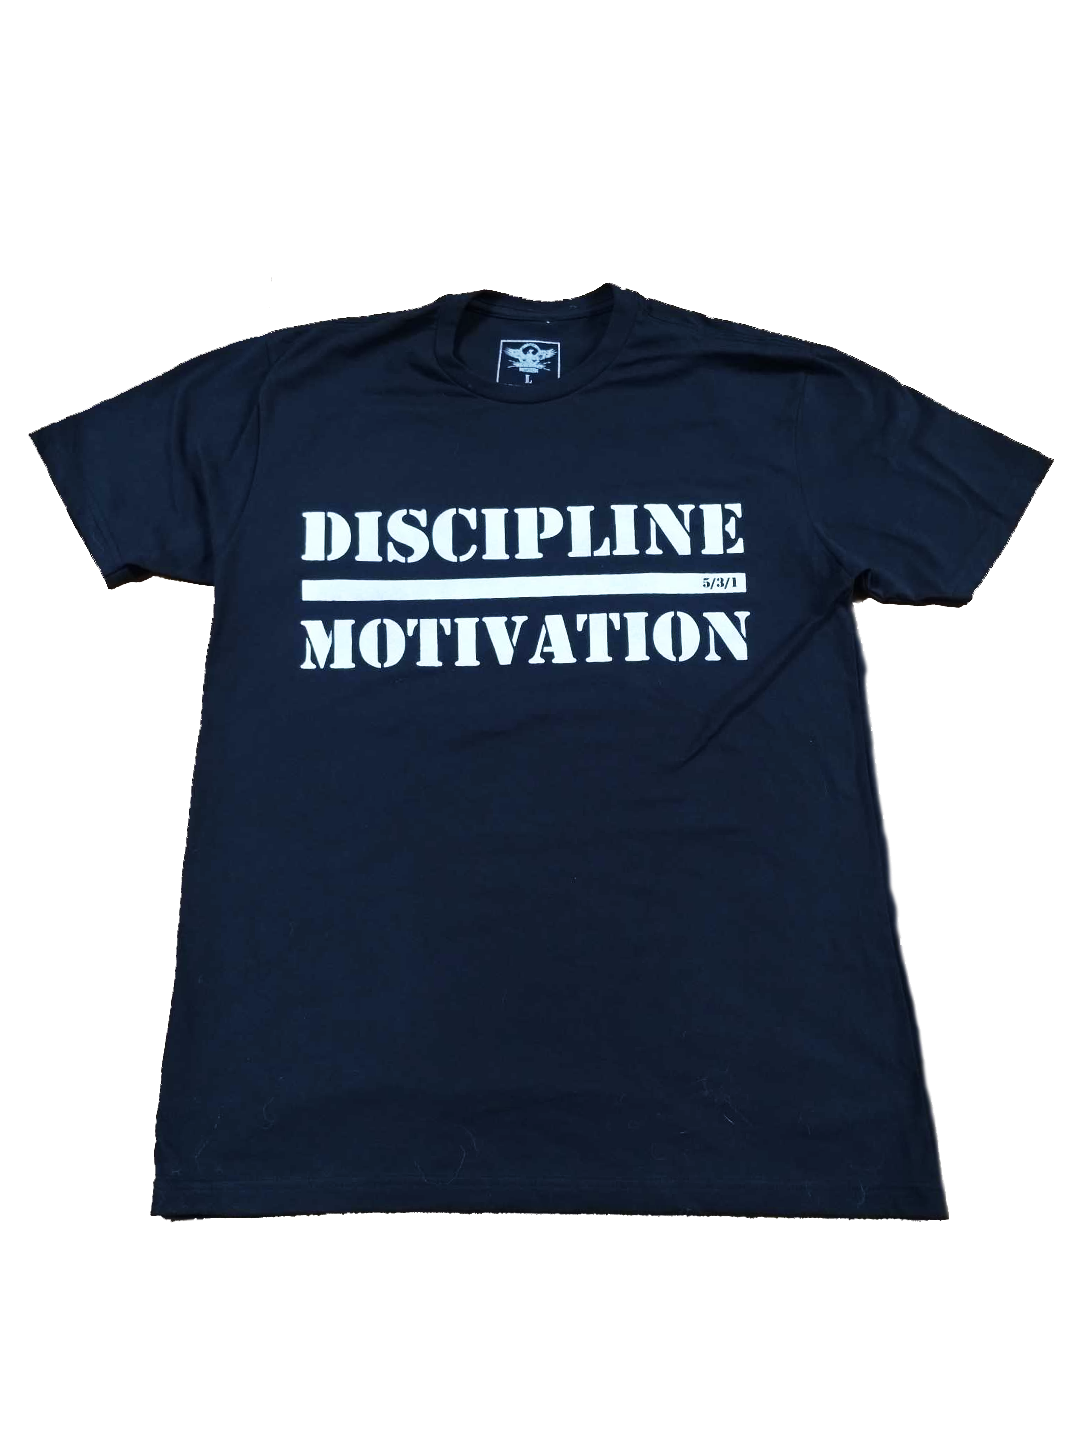 Discipline Over Motivation Tee - Black/white